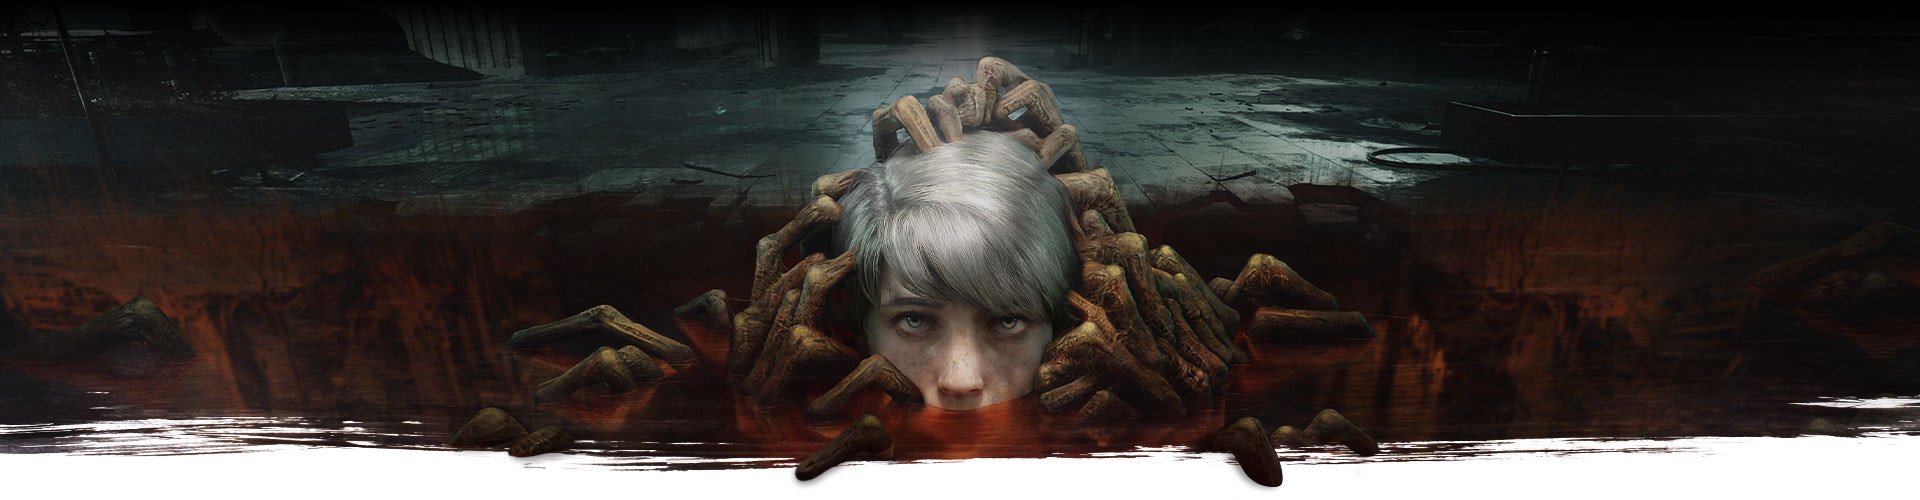 La testa di un bambino emerge da una pozzanghera piena di mani di zombi.